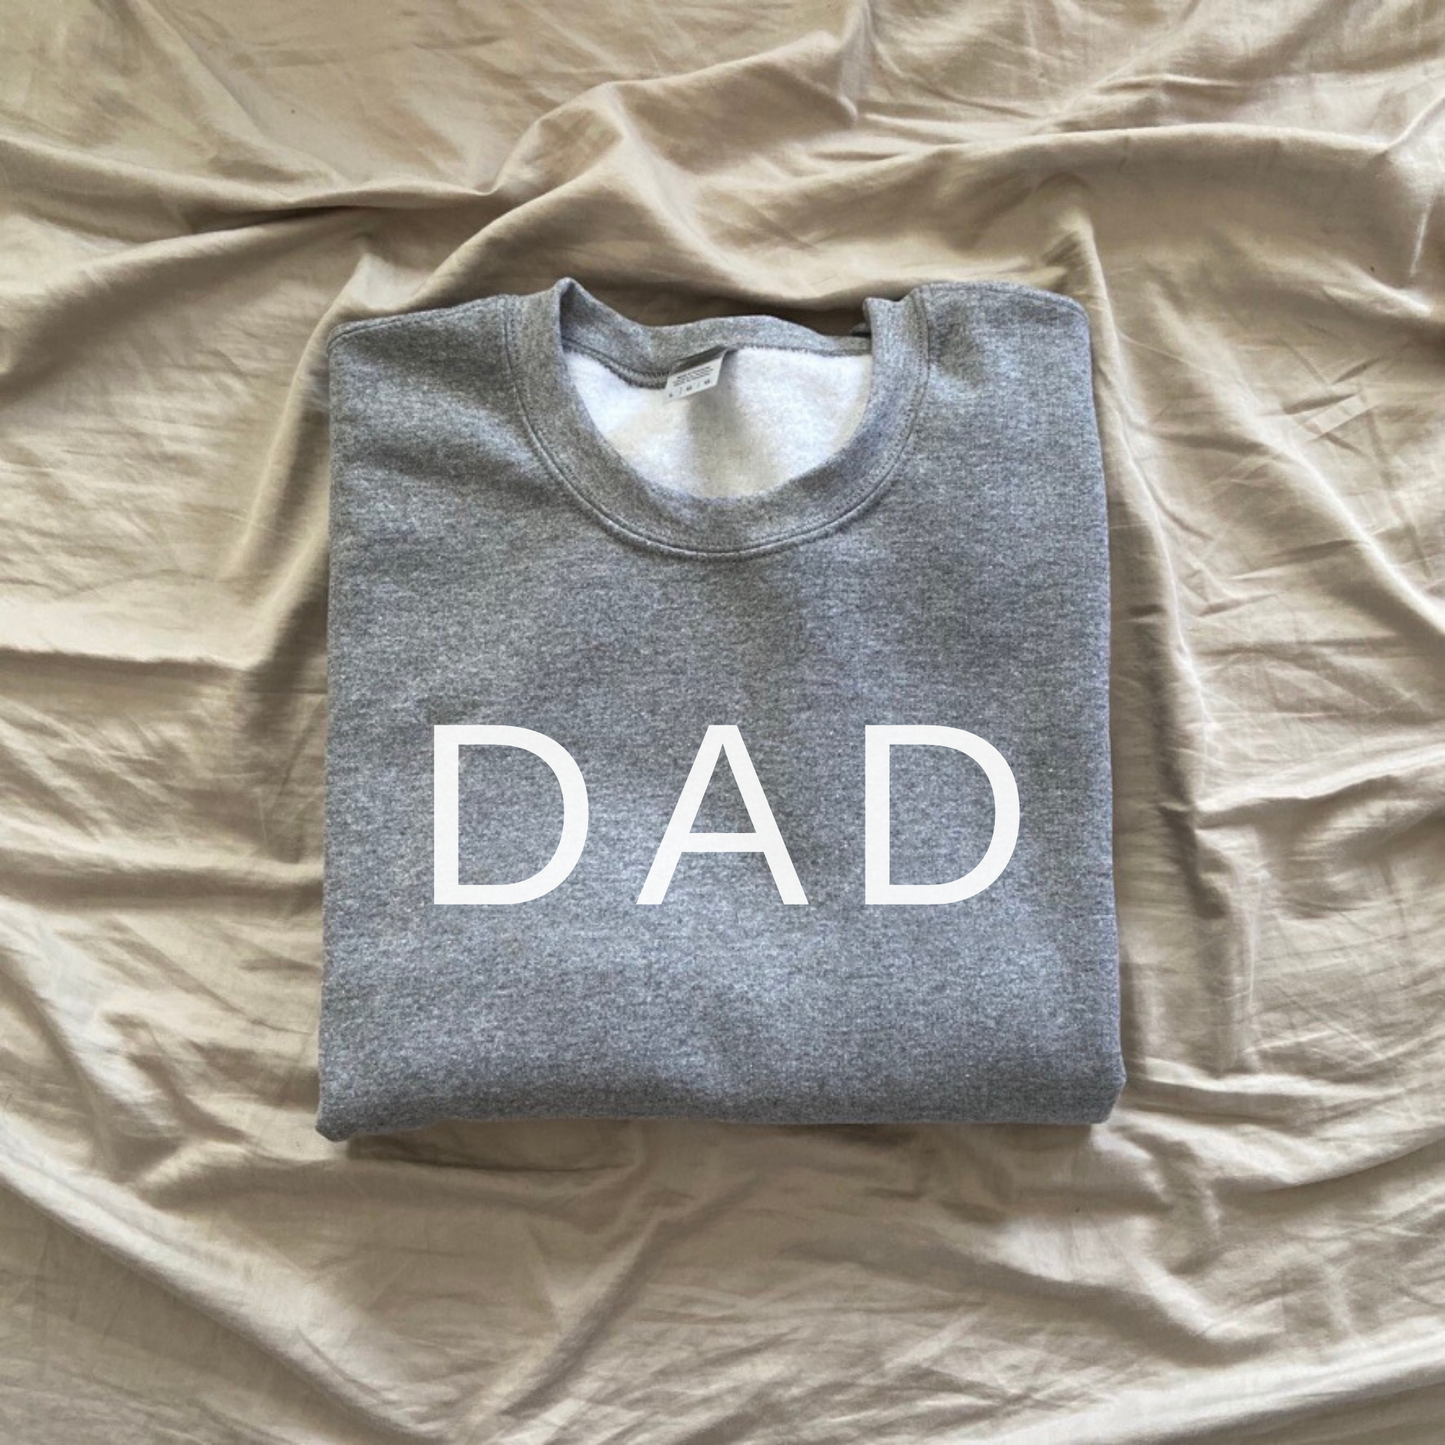 DAD Crewneck Sweatshirt